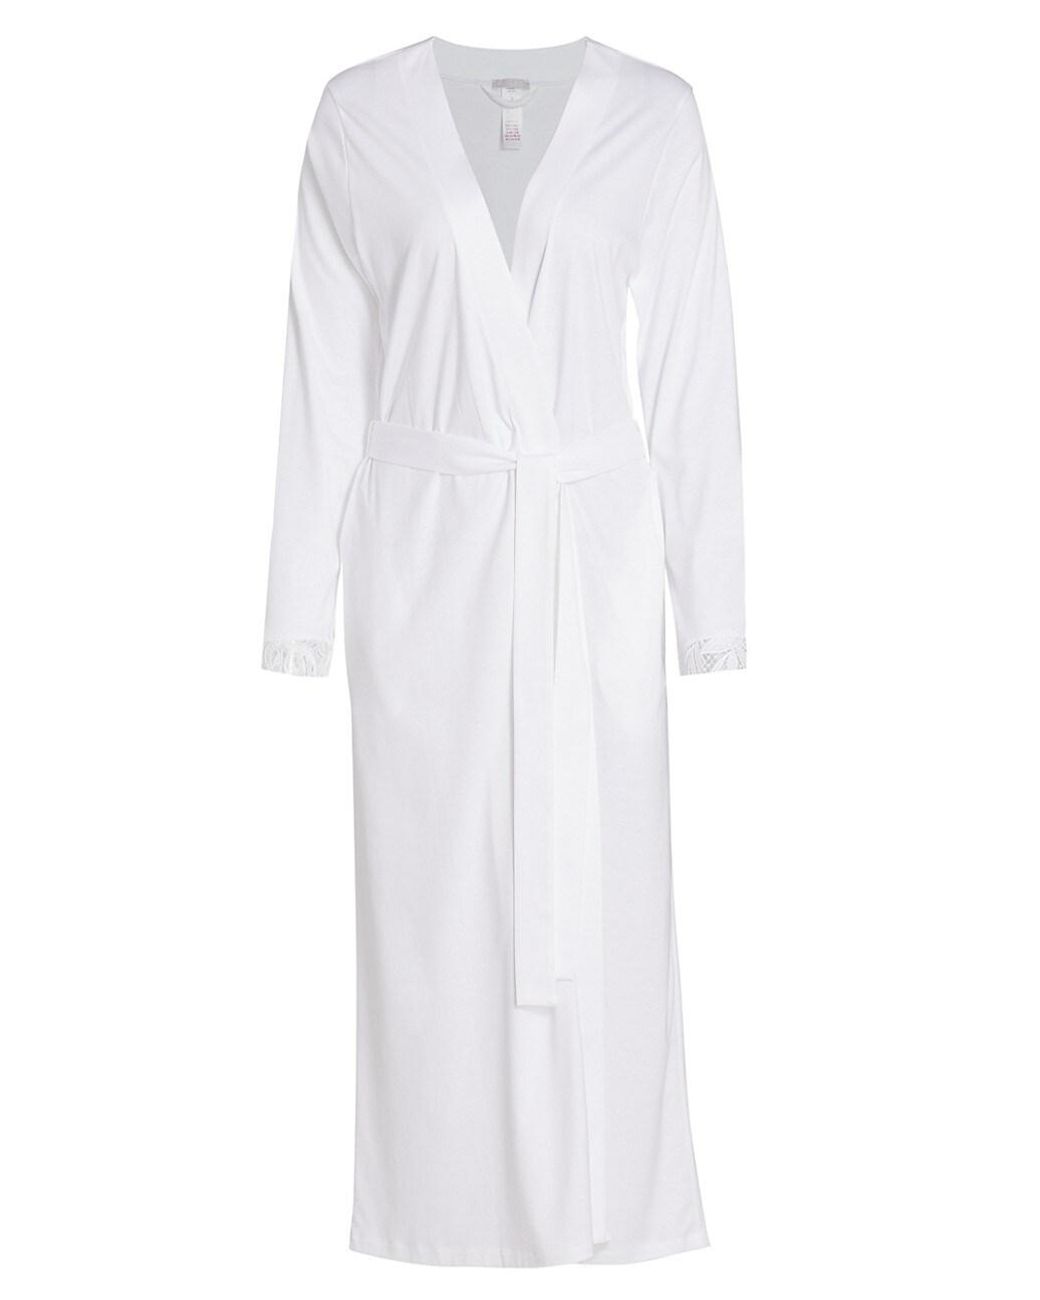 Hanro Zelda Cotton Robe in White | Lyst